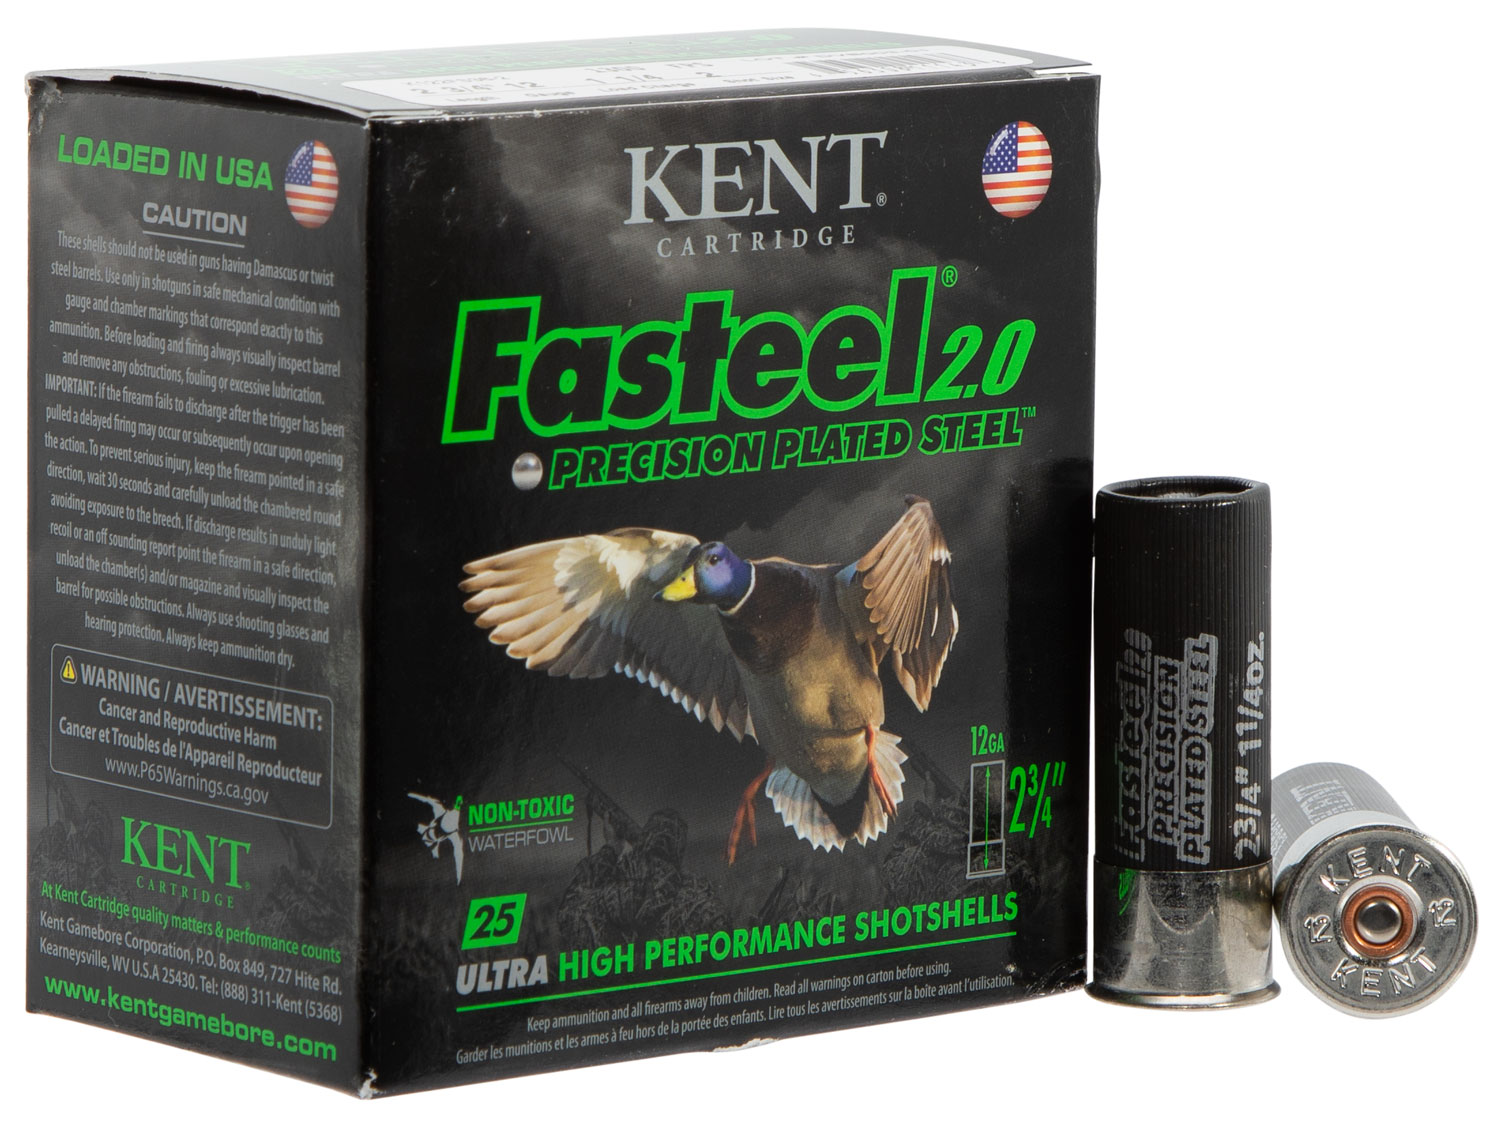 Kent Cartridge K122FS362 Fasteel 2.0 12 Gauge 2.75